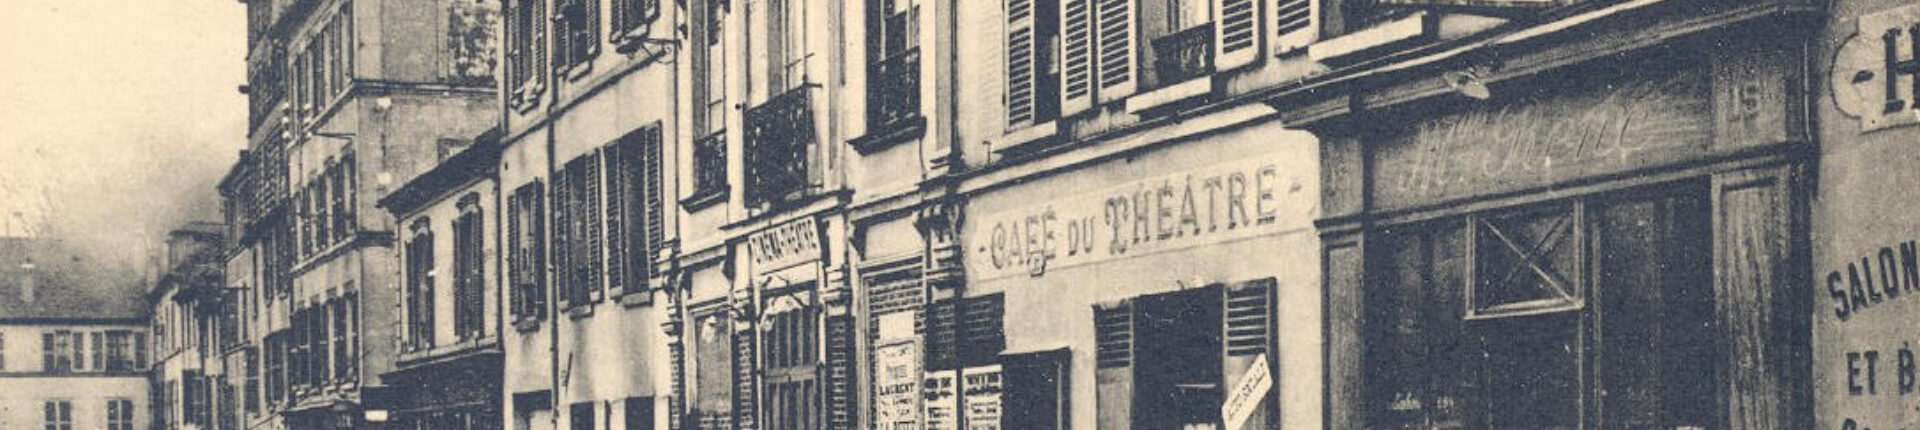 Le théâtre de Sèvres, toute une histoire…